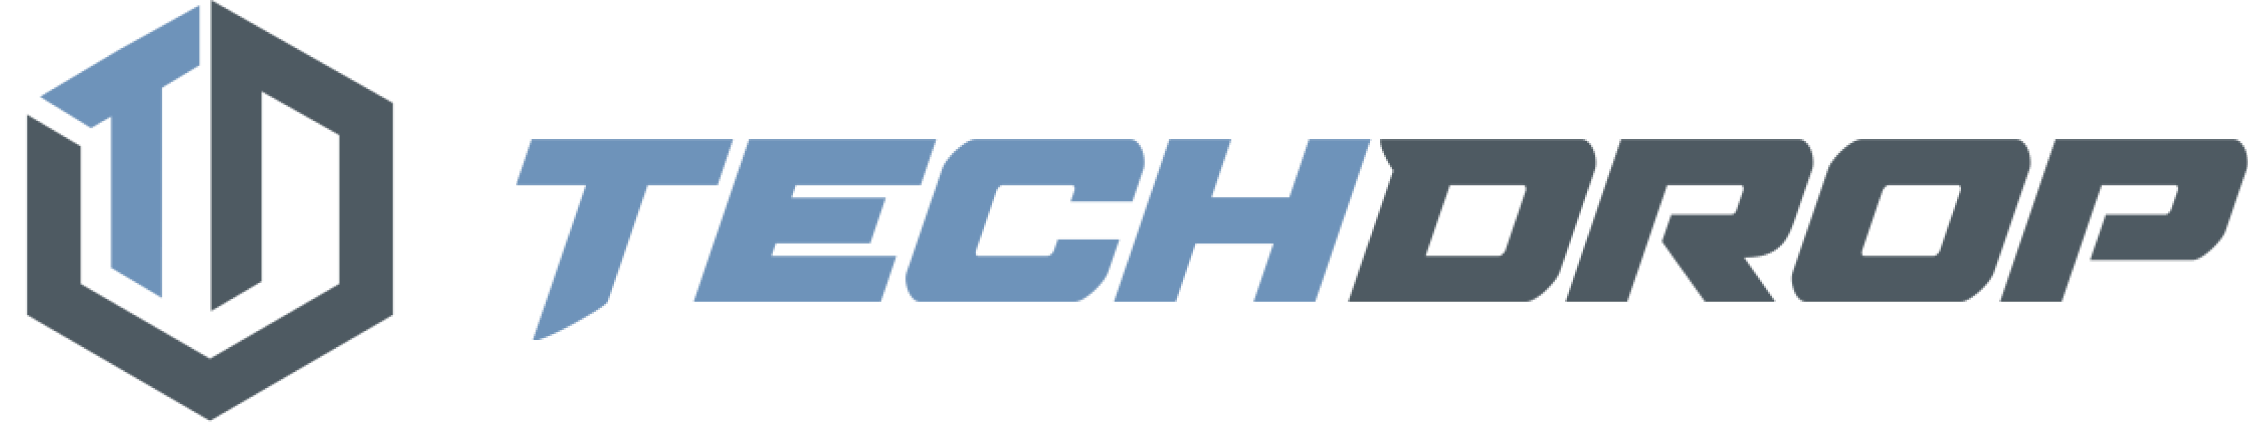 TechDrop Logo